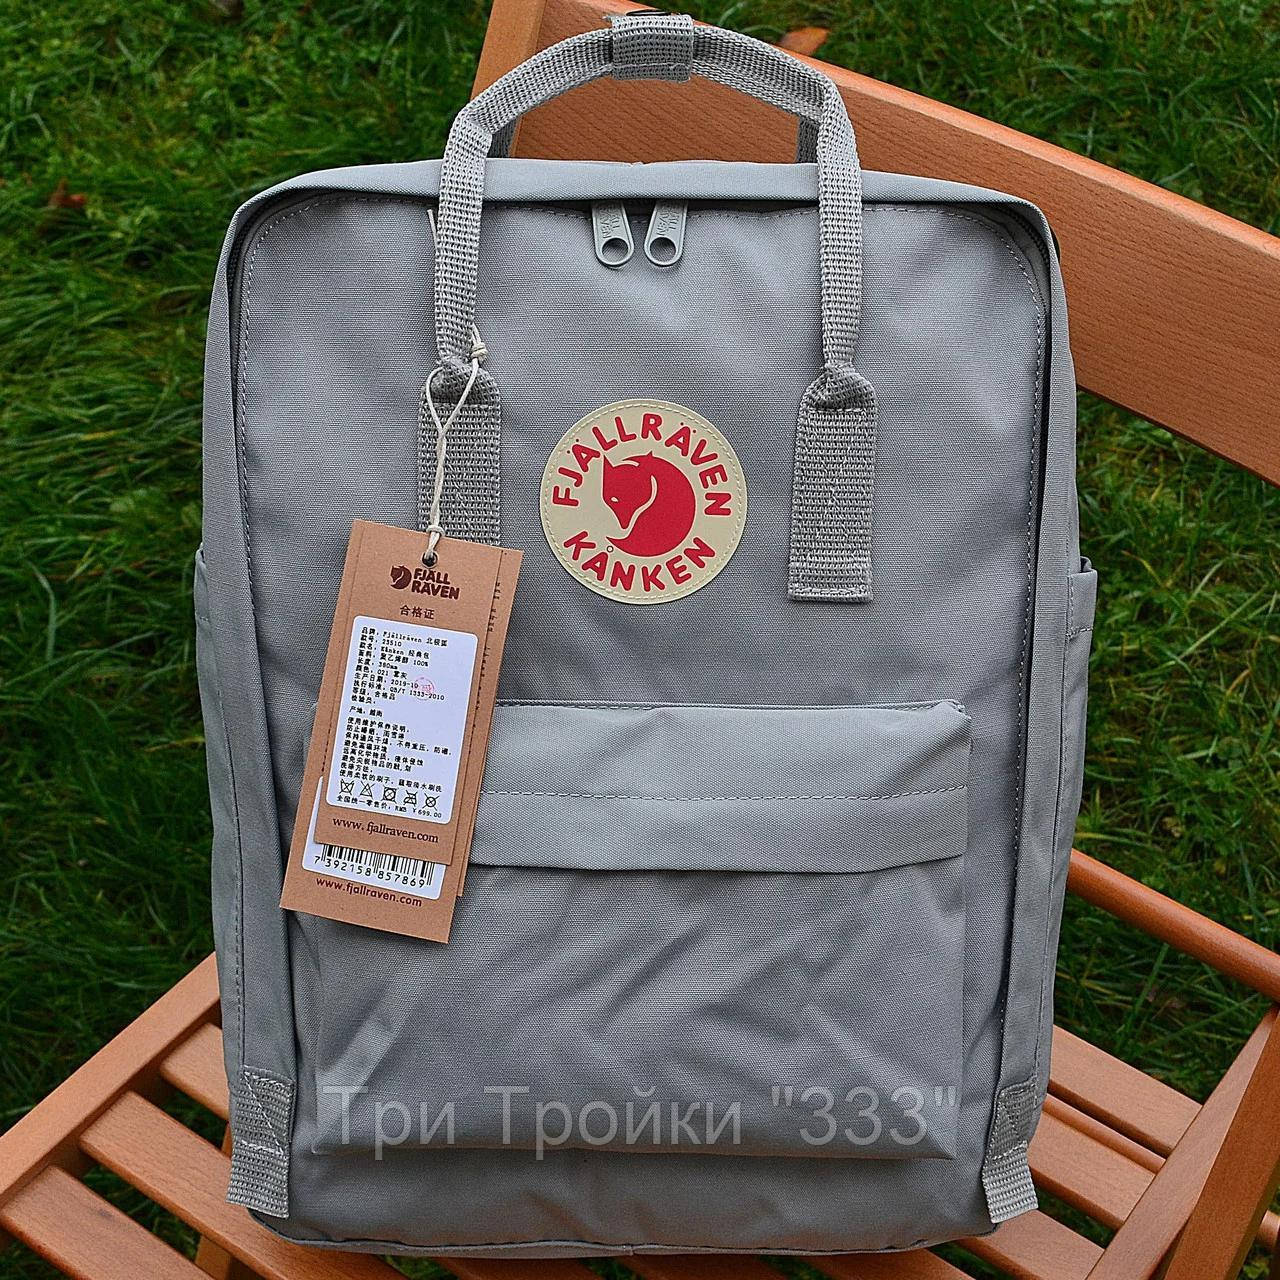 

Городской рюкзак Fjallraven Kanken, портфель, школьній рюкзак, ранец, канкен серый/grey